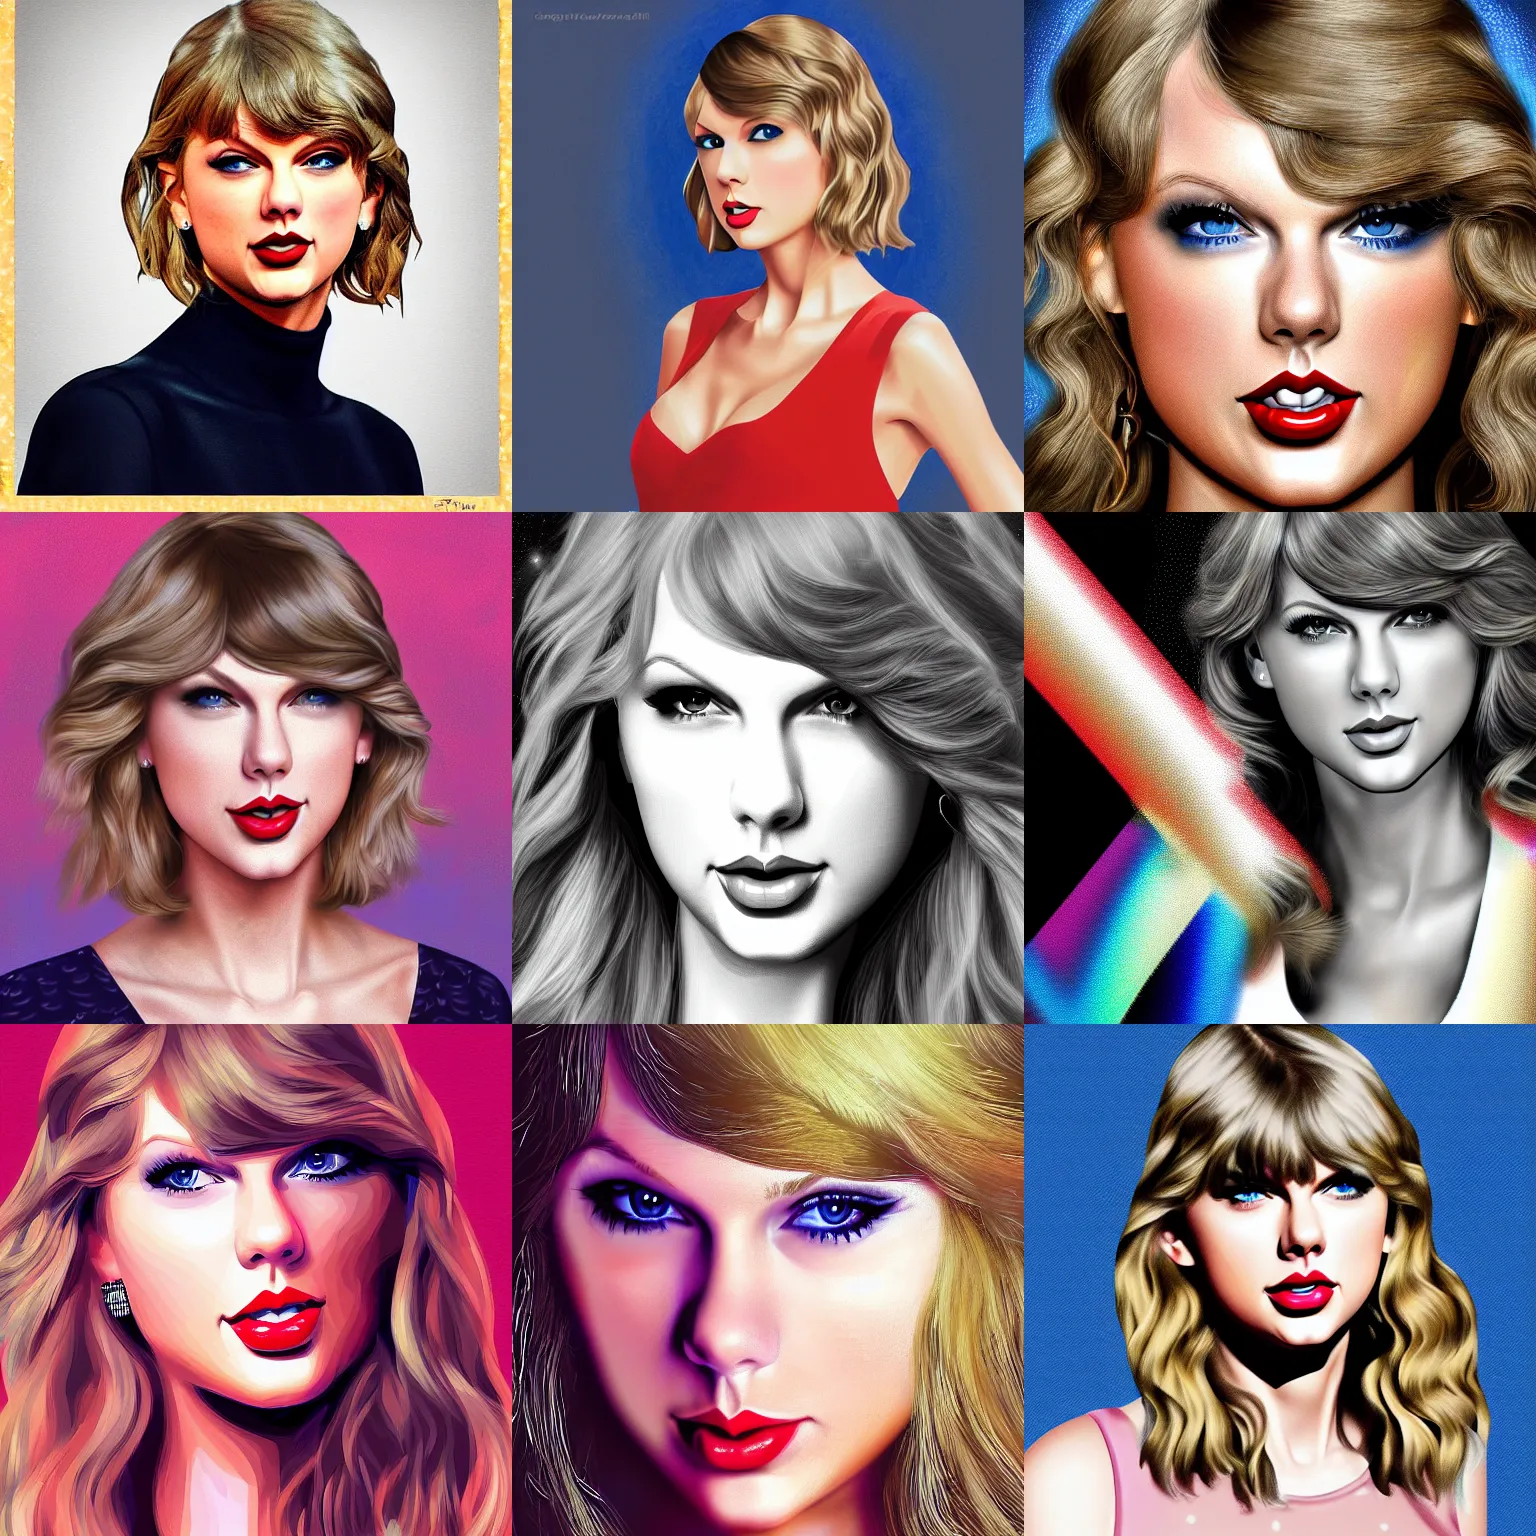 Prompt: Taylor Swift, digital art